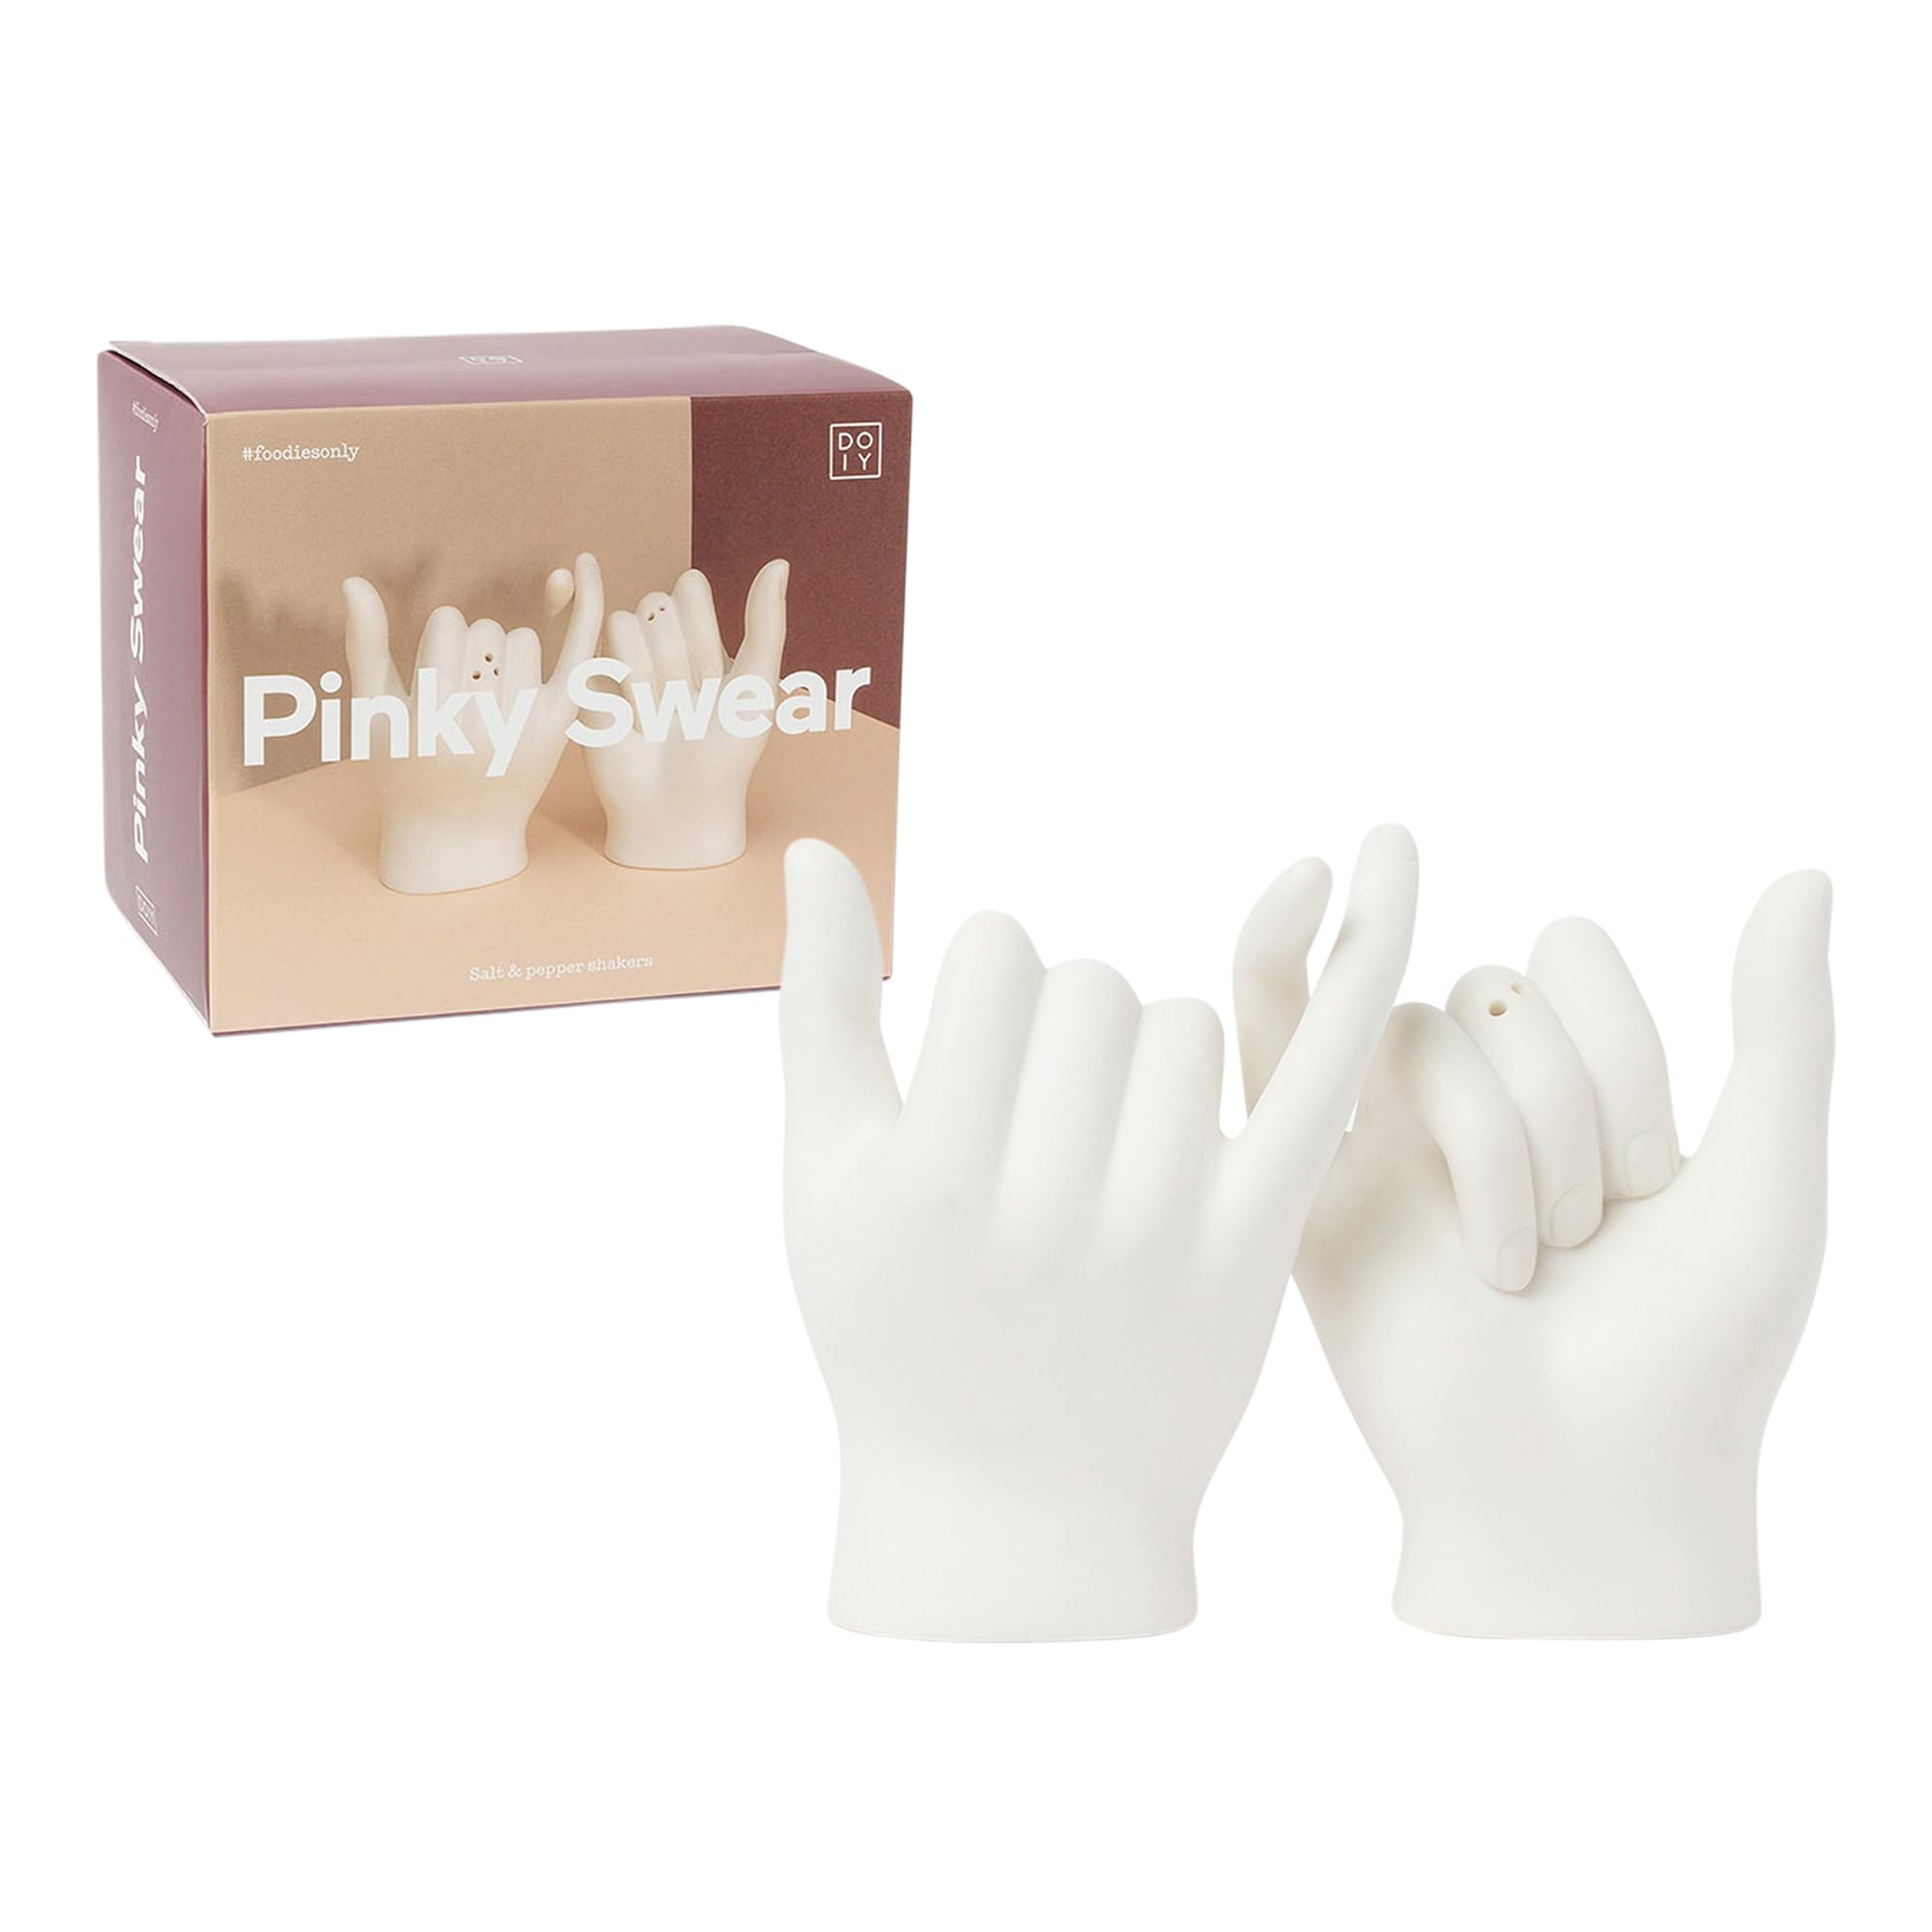 DOIY - Moderne Salz- und Pfeffermühle in Pinky-Swear-Form (kleines-Finger-Versprechen) aus Keramik. Verleiht Rezepten das Extra, bewahrt Frische. Maße: 12x14x17,5 cm.